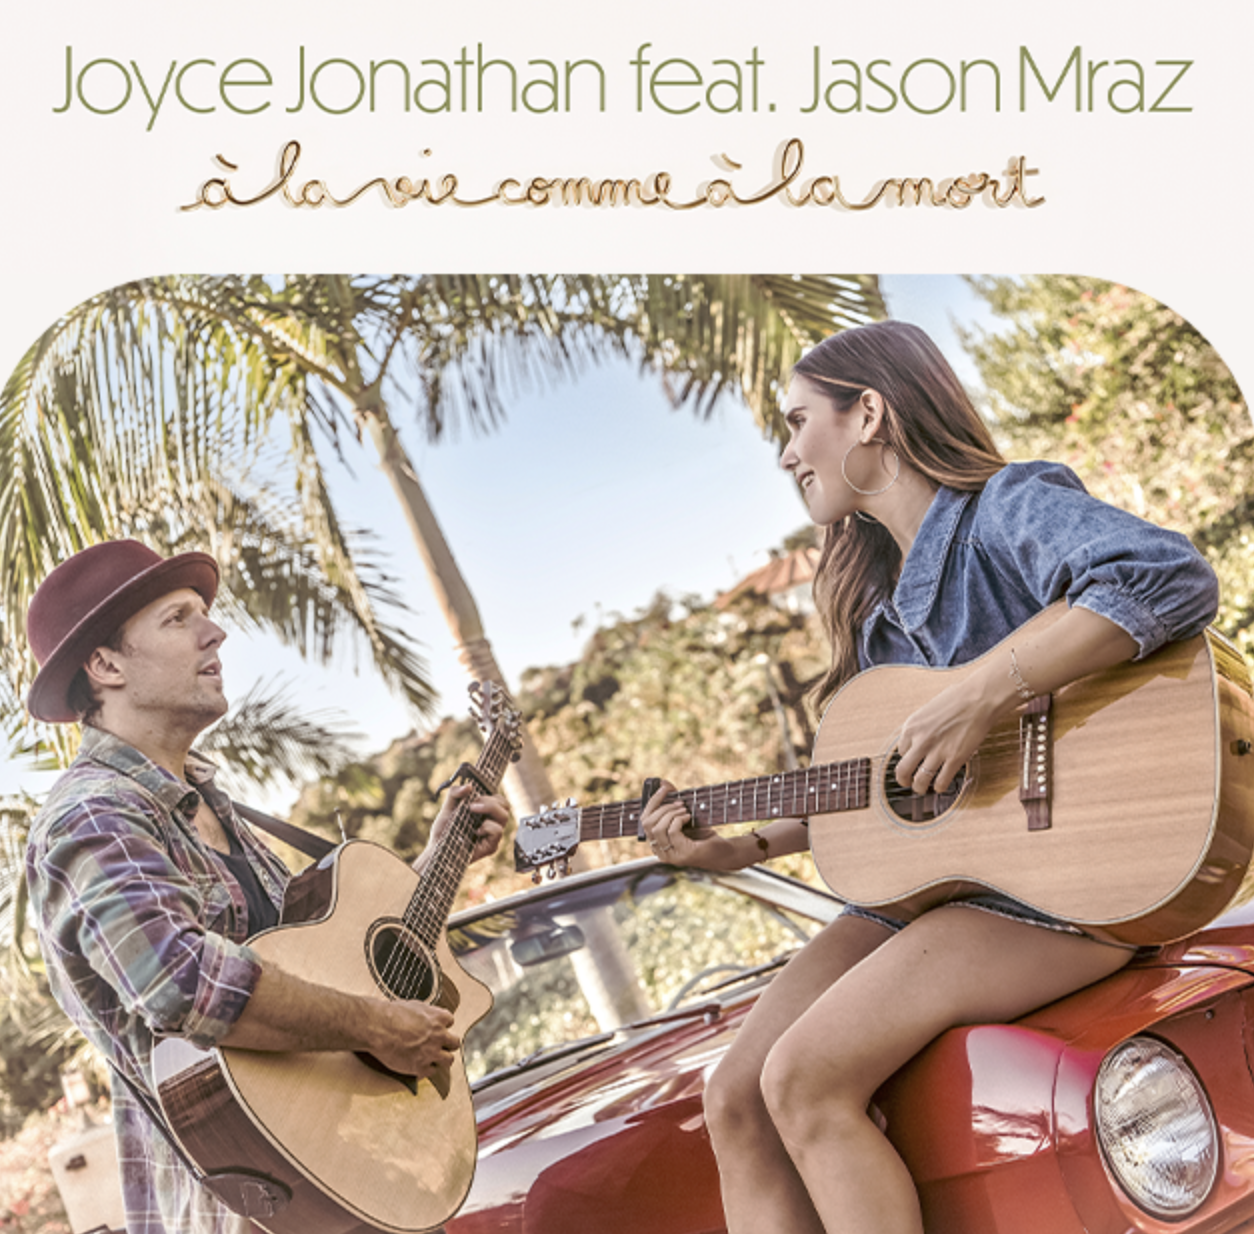 Joyce Jonathan nous propose un duo avec Jason Mraz avant la sortie de son nouvel album en 2022